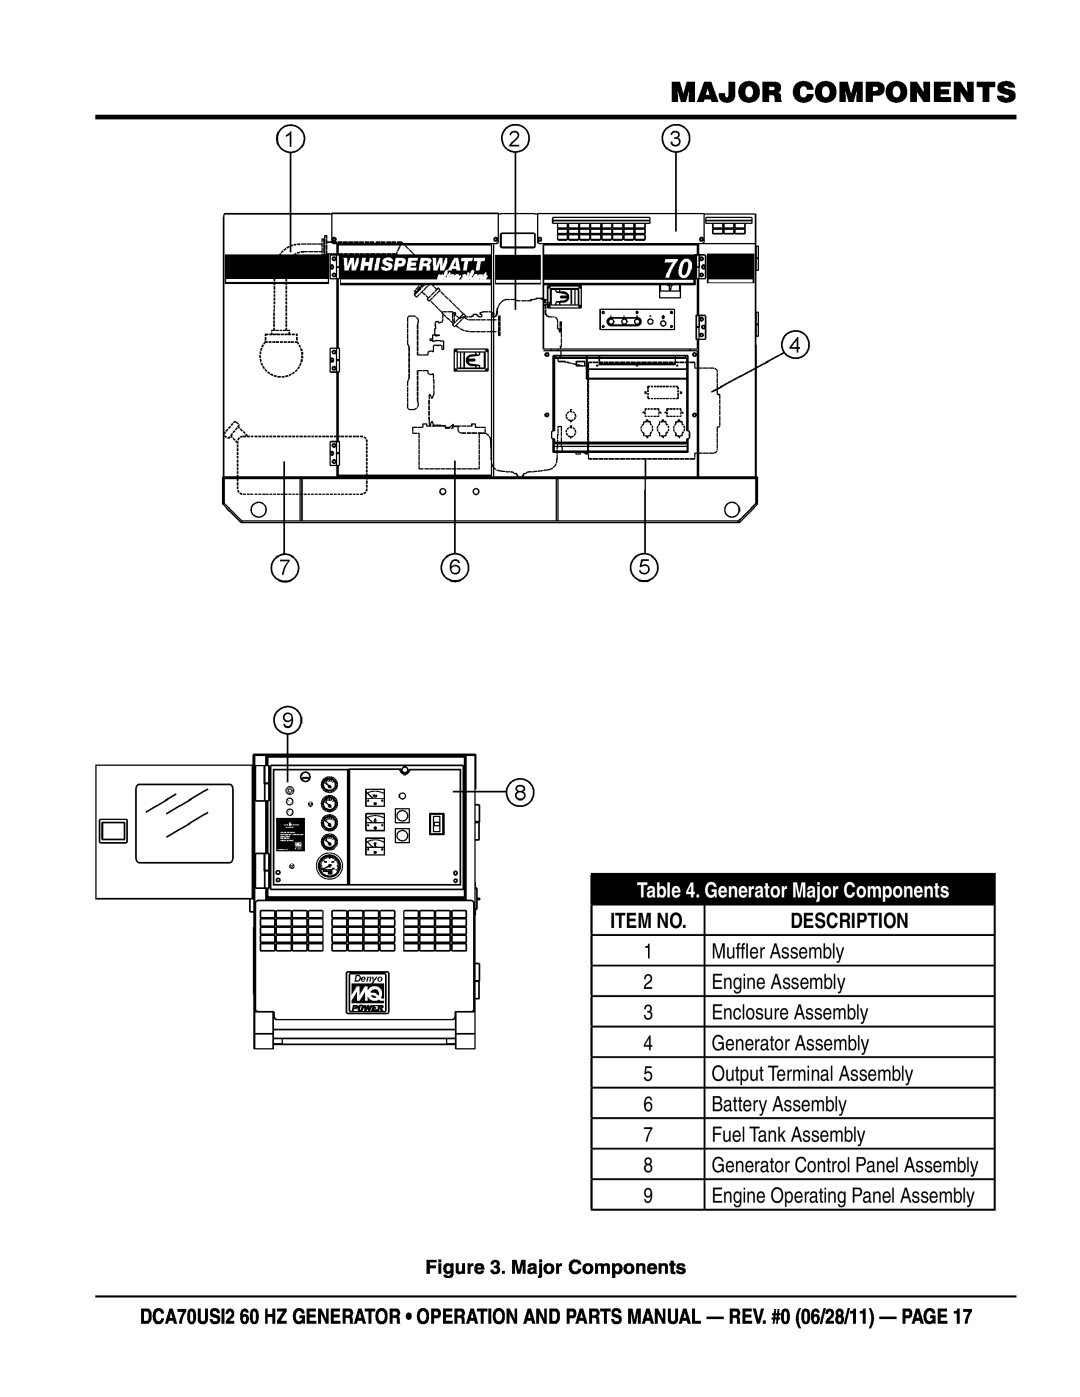 Multiquip DCA70USI2 manual Generator Major Components, Item No 